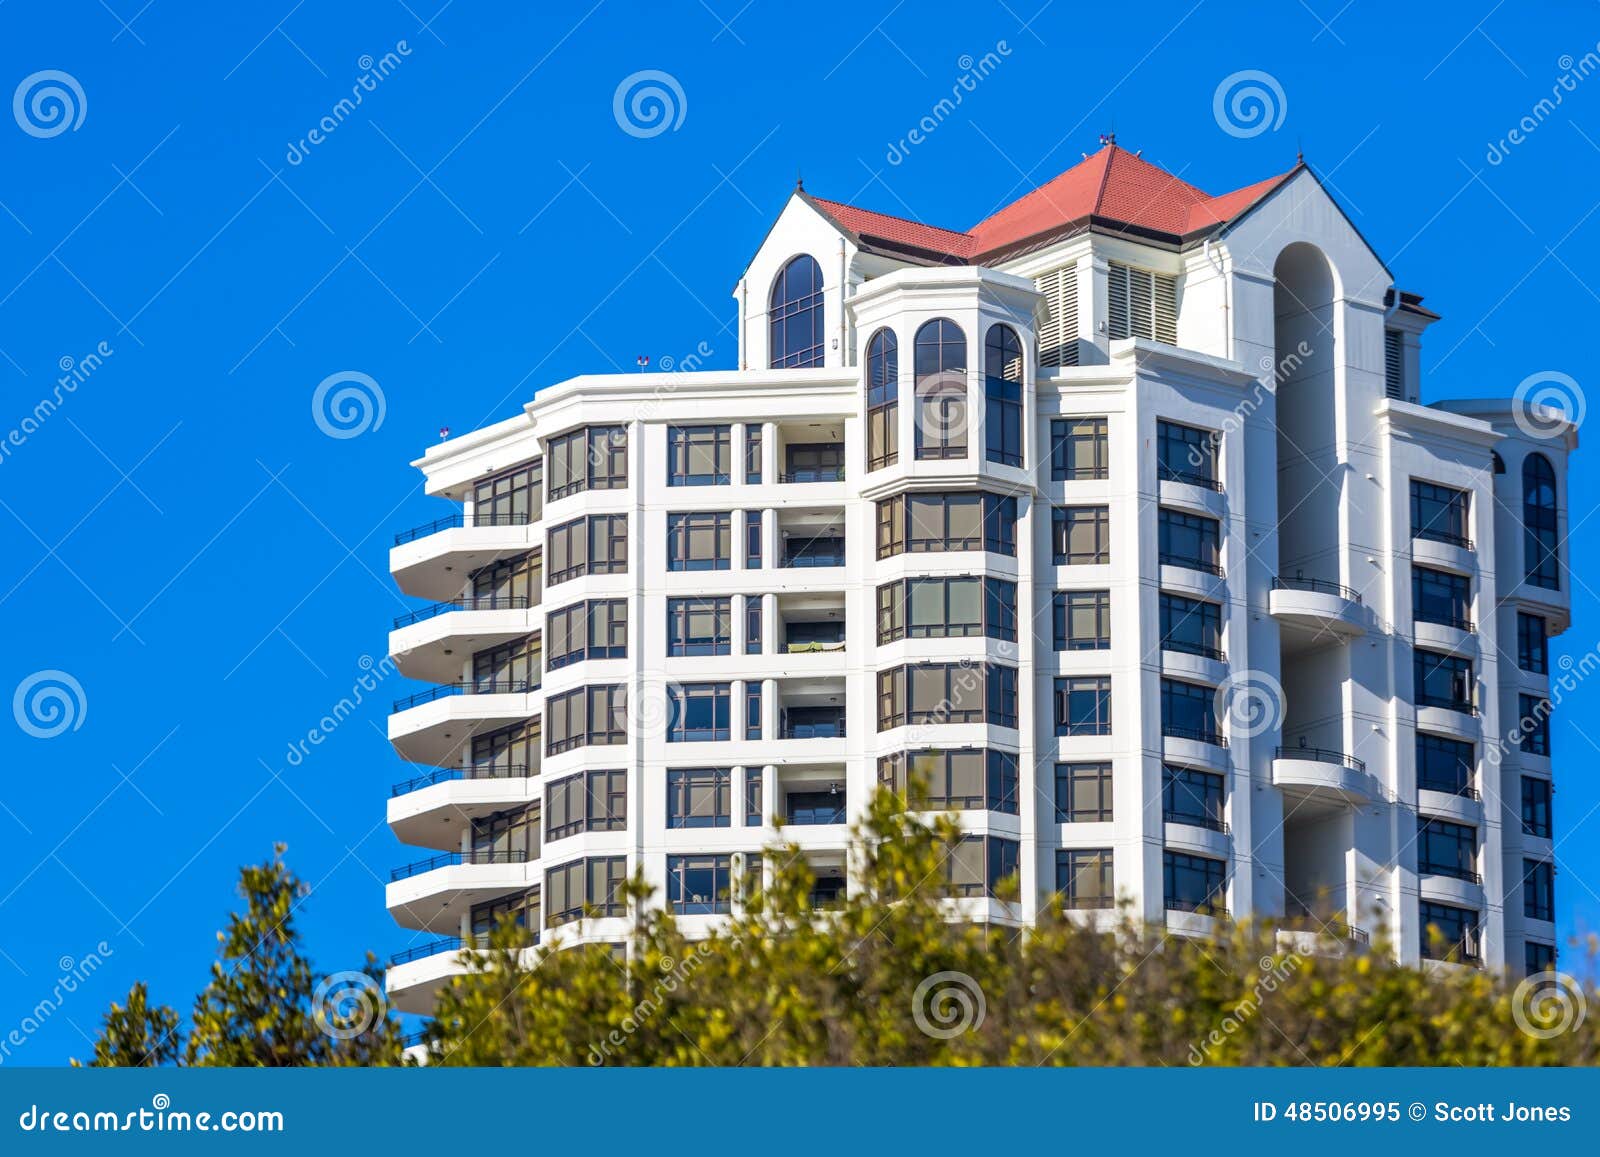 modern high rise condominium